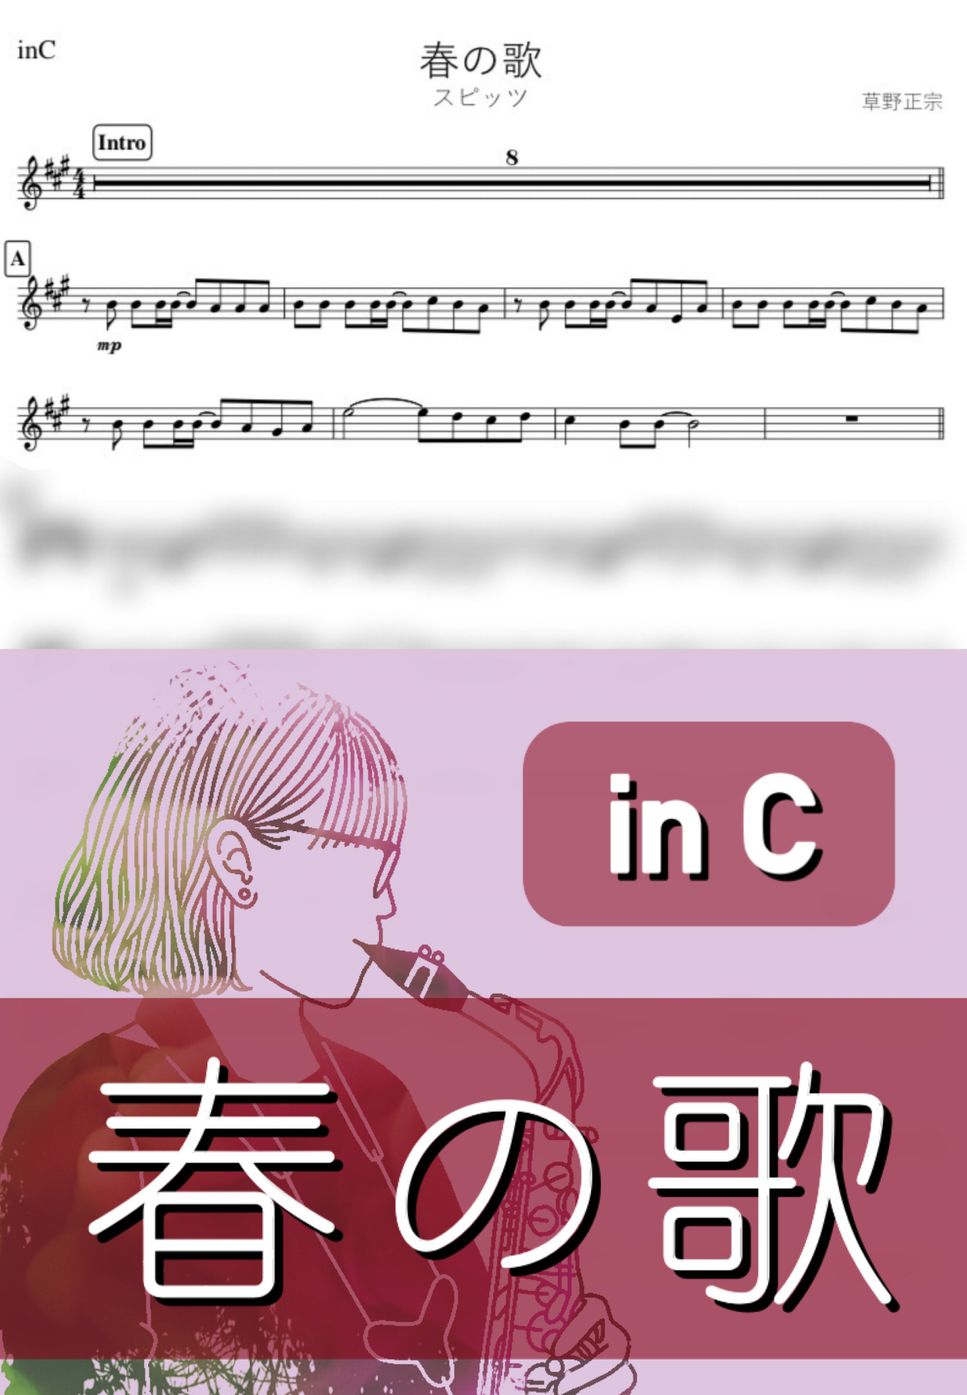 スピッツ - 春の歌 (C) by kanamusic